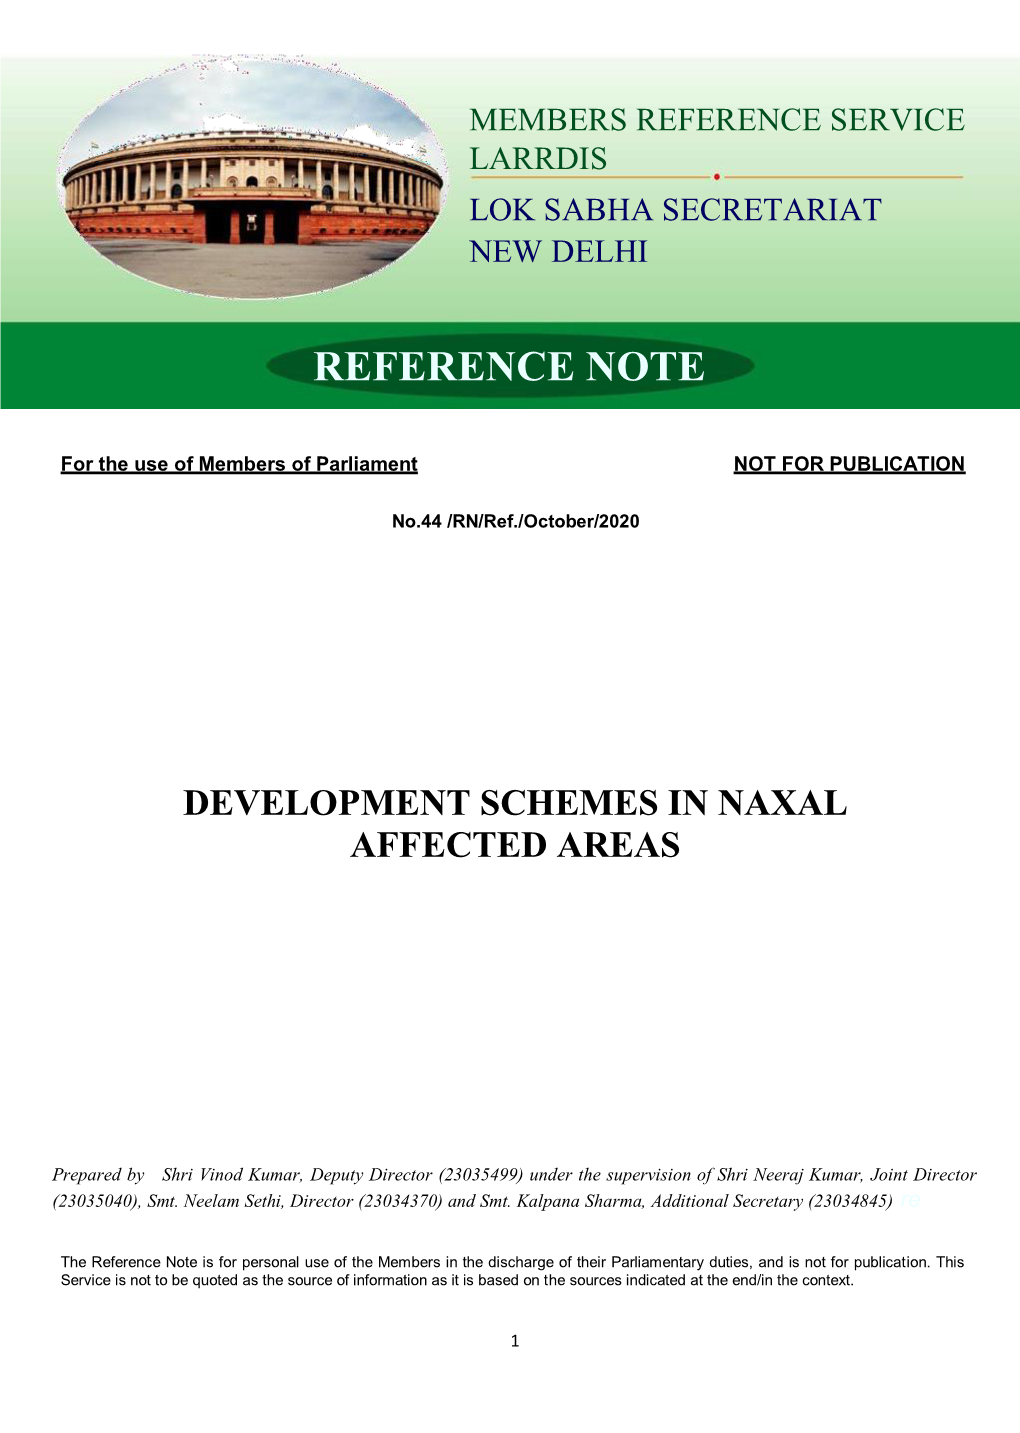 Development Schemes in Naxal Affected Areas